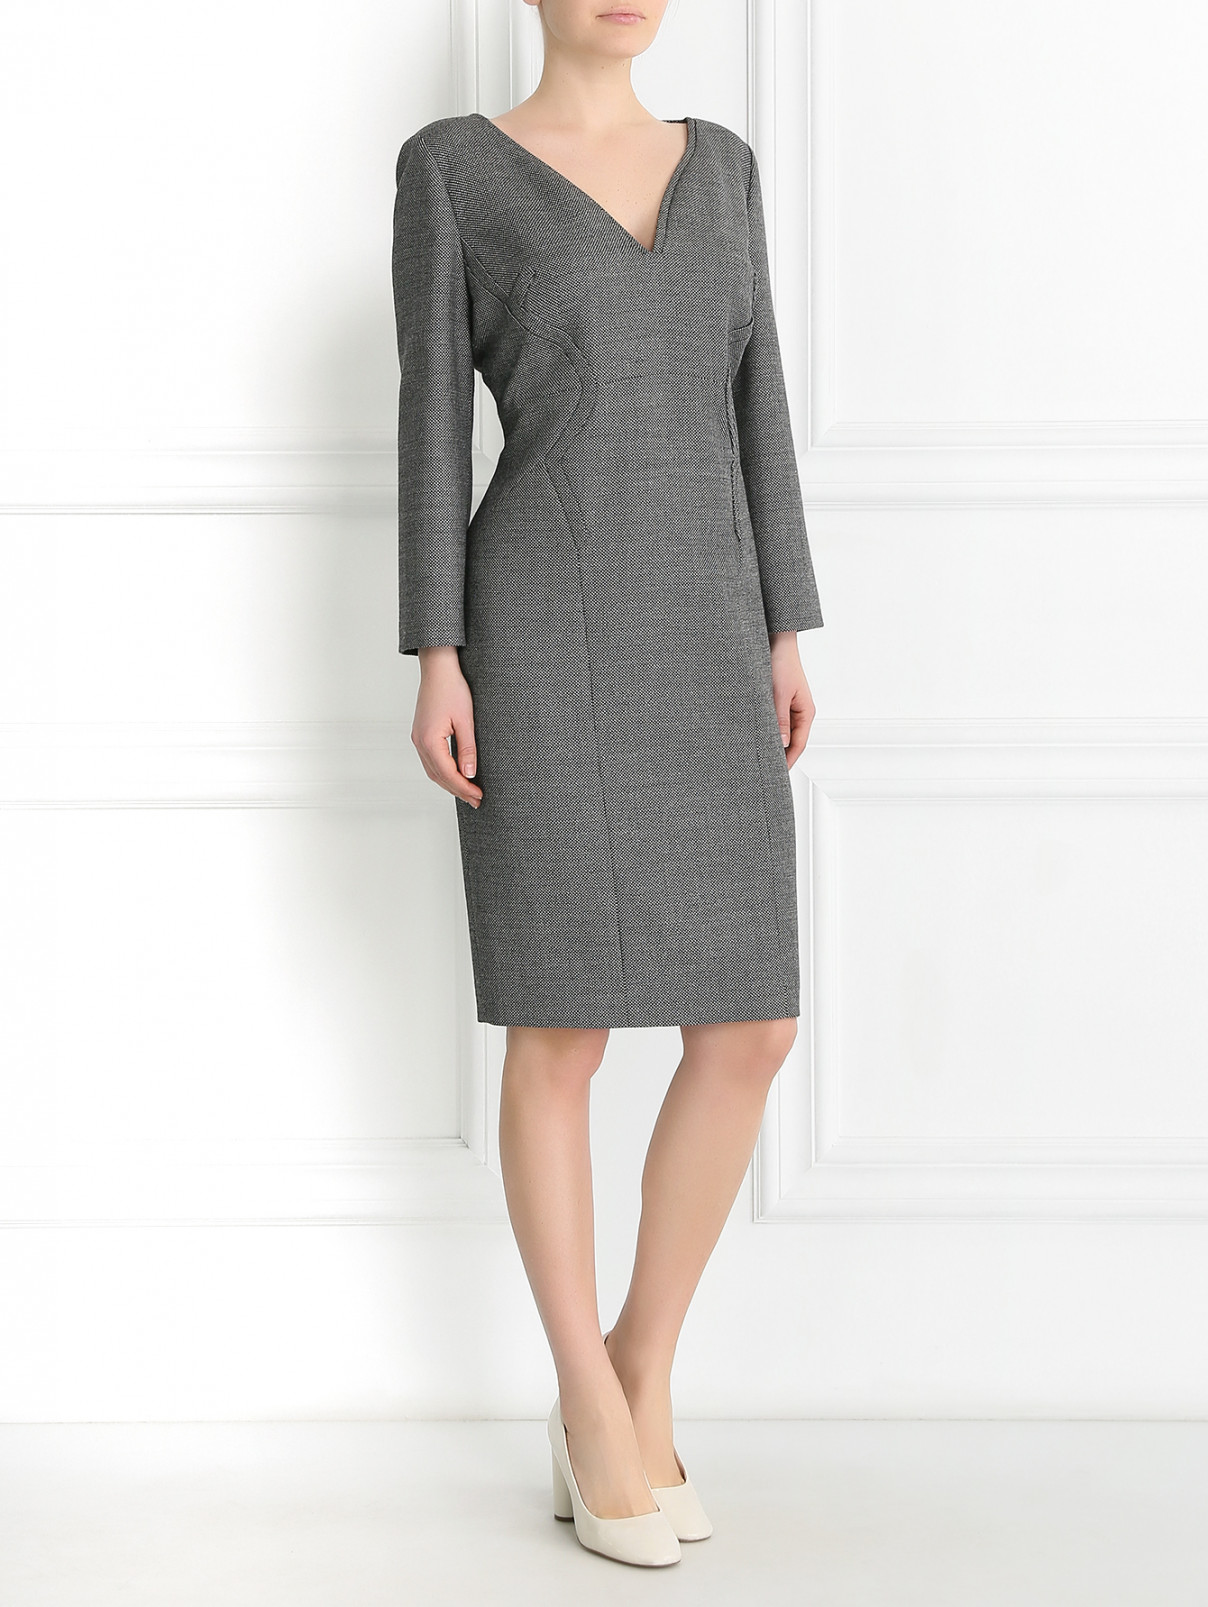 Платье из шерсти с длинным рукавом Antonio Berardi  –  Модель Общий вид  – Цвет:  Серый